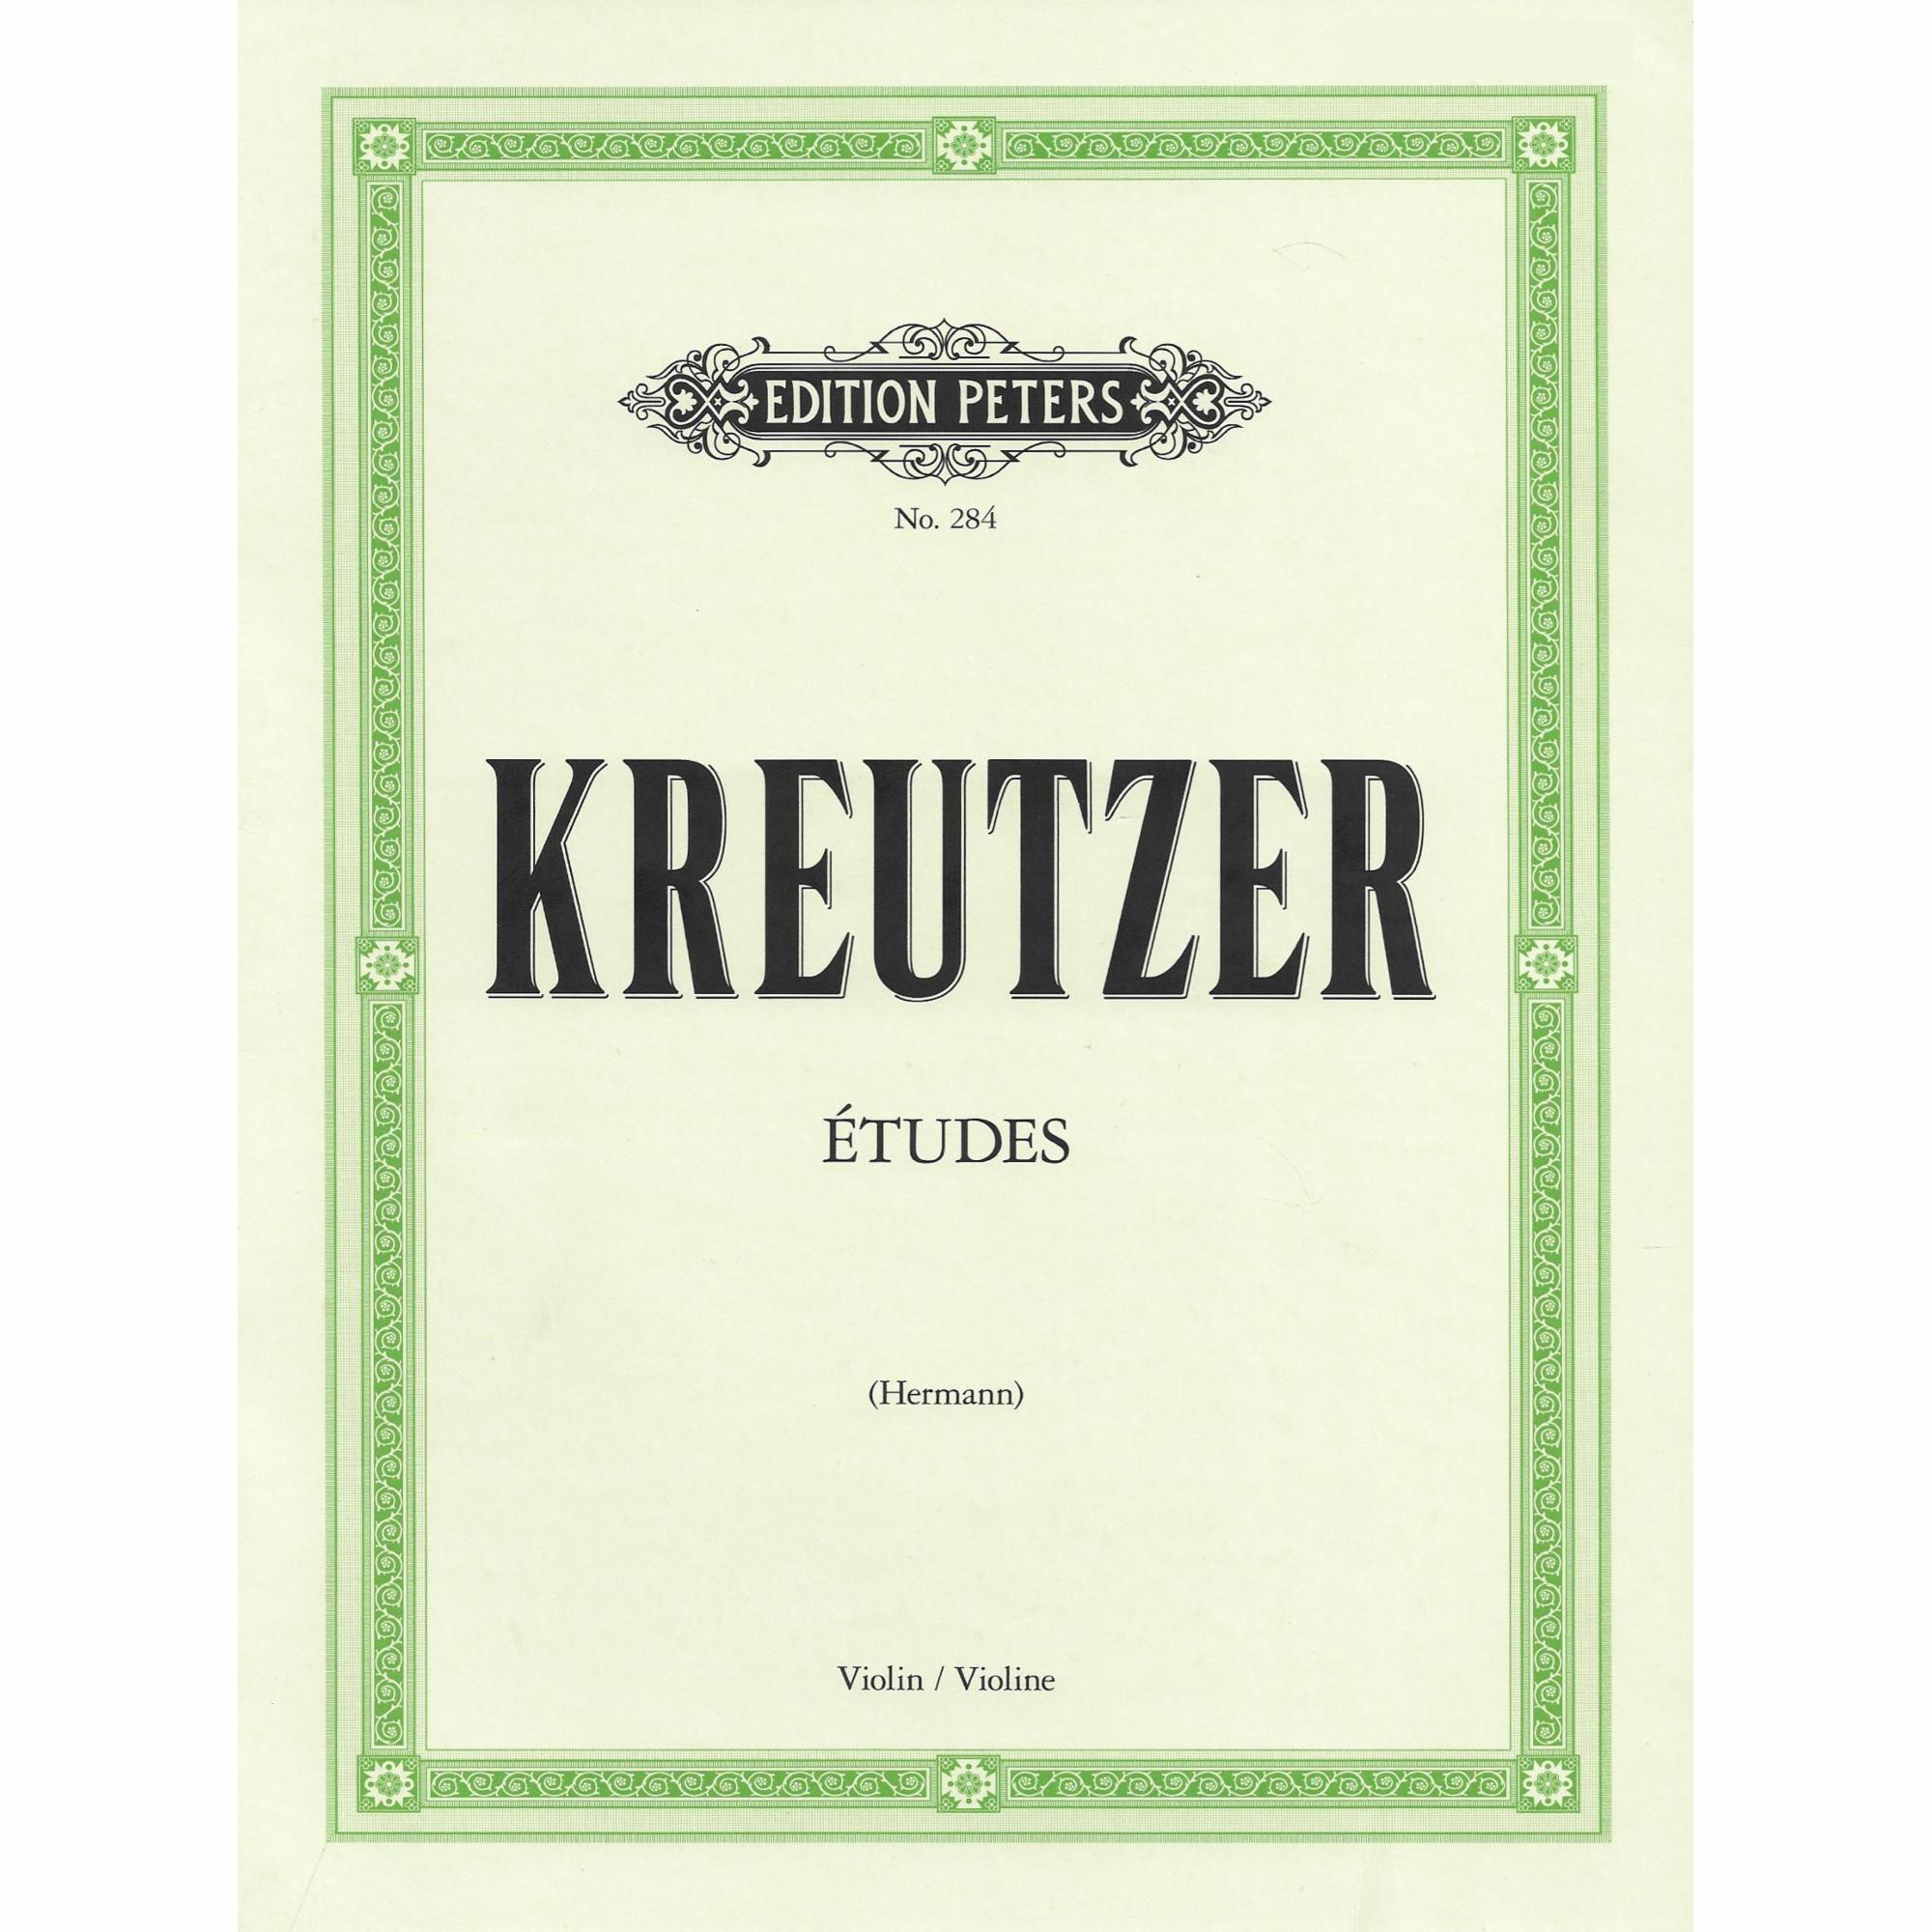 Kreutzer -- 42 Etudes for Violin